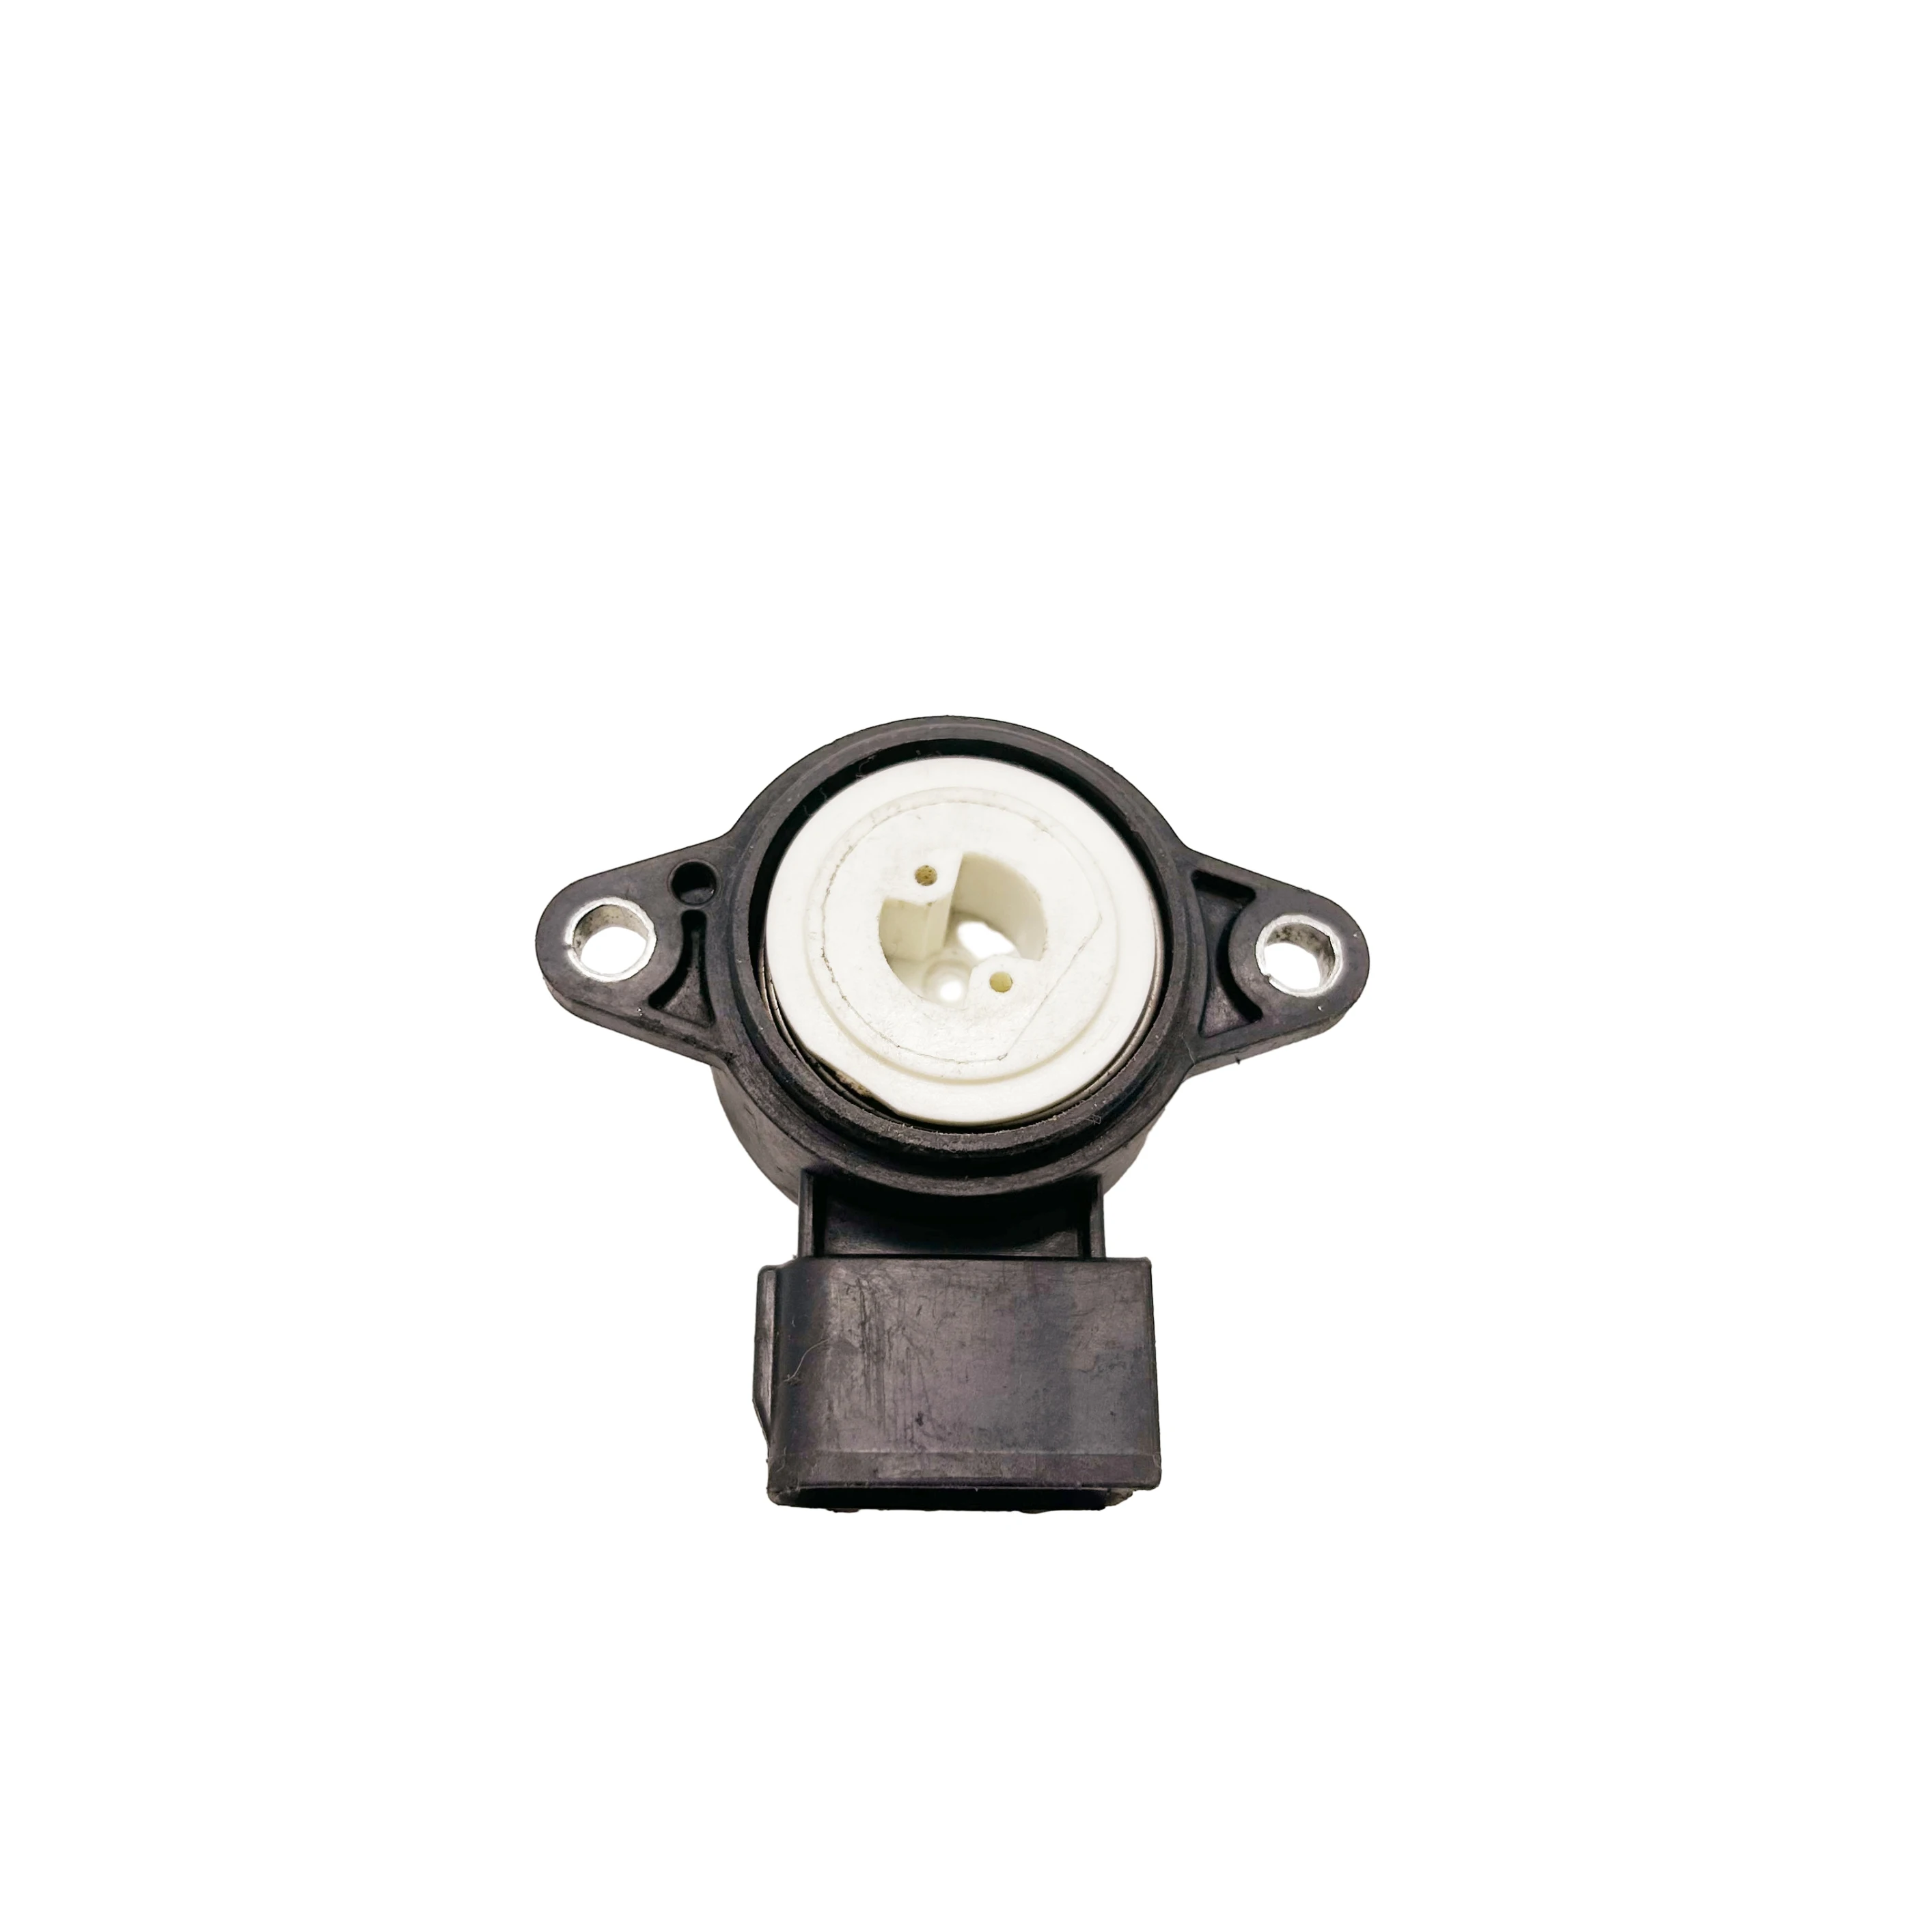 

89452-52011 Throttle Position Sensor Fits For TOYOTA Avensis Corolla Rav 4 97-08